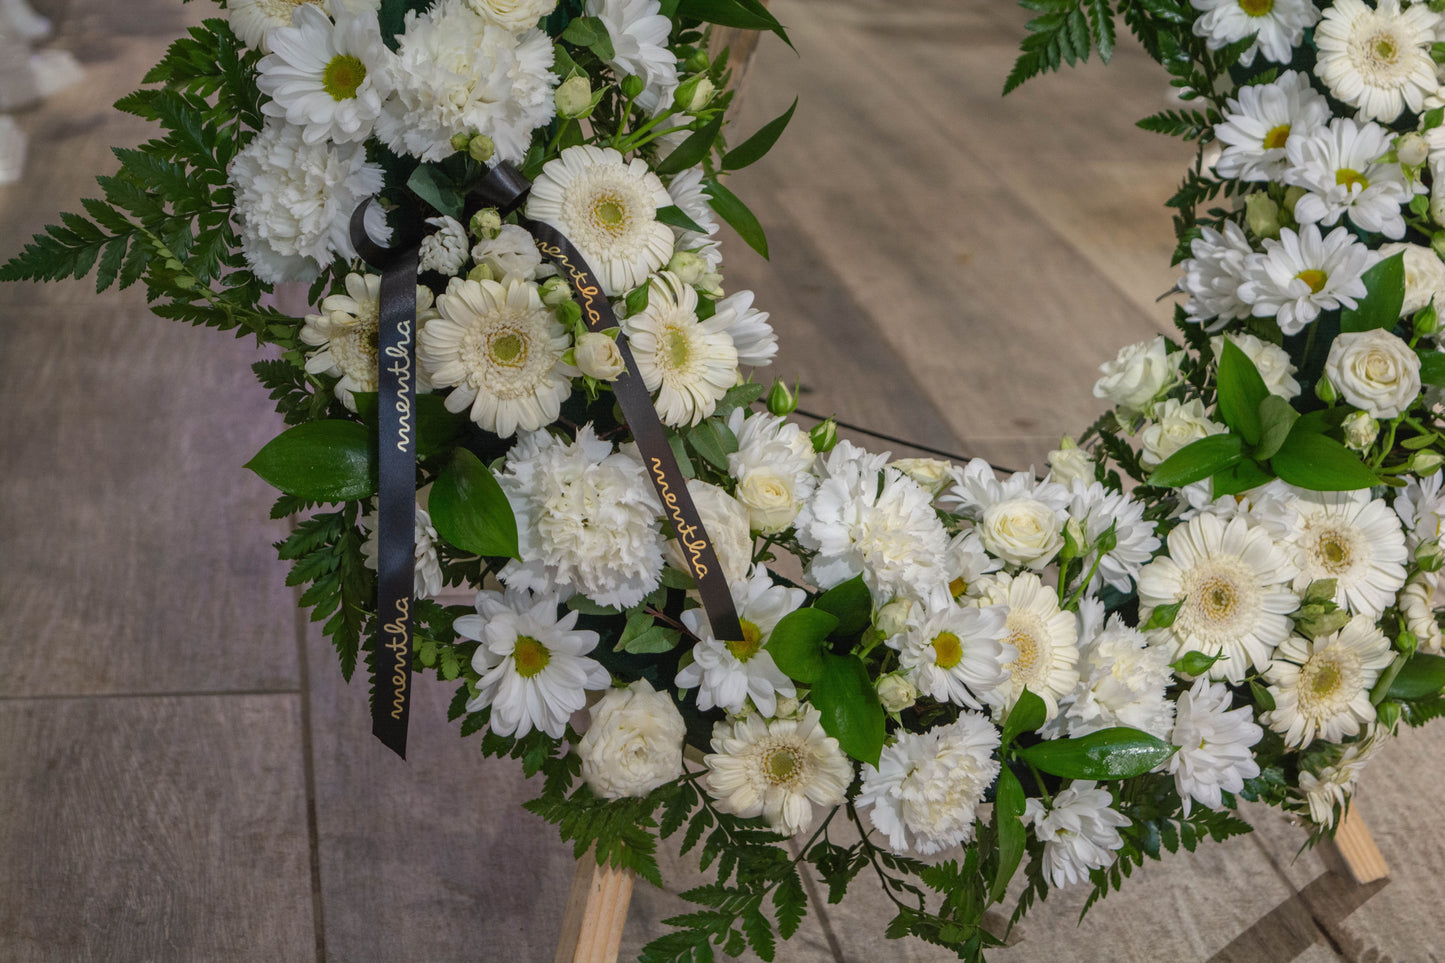 Esența divină a coroanei: crizanteme albe și accente subtile, transmițând un sentiment de puritate și respect, cu livrare GRATUITĂ în Resita.